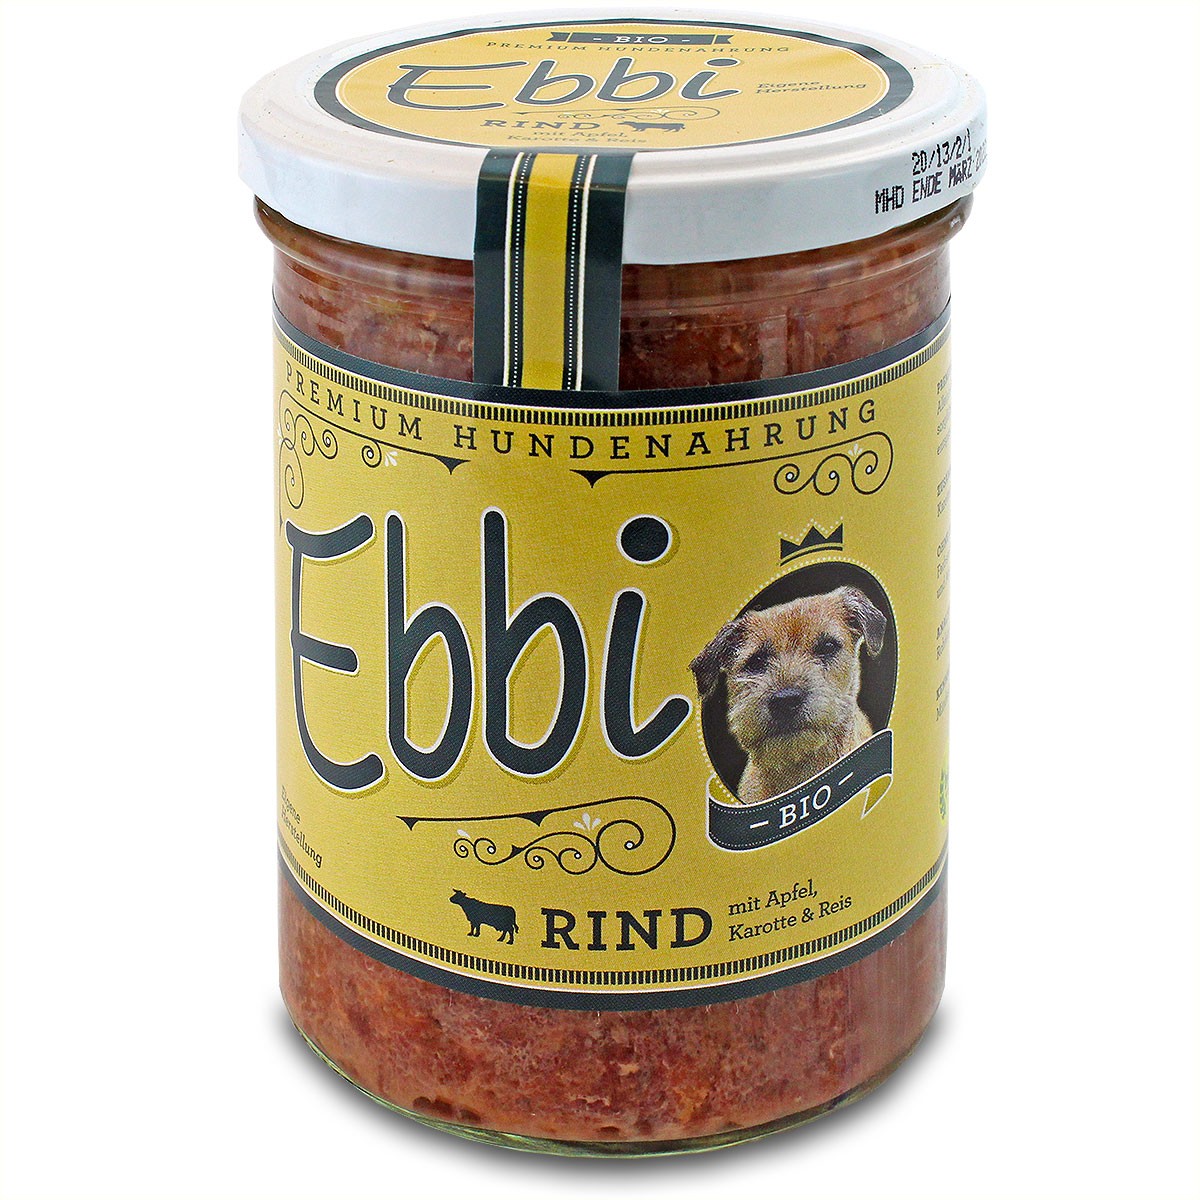 Ebbi "Bio Rind" für den Hund